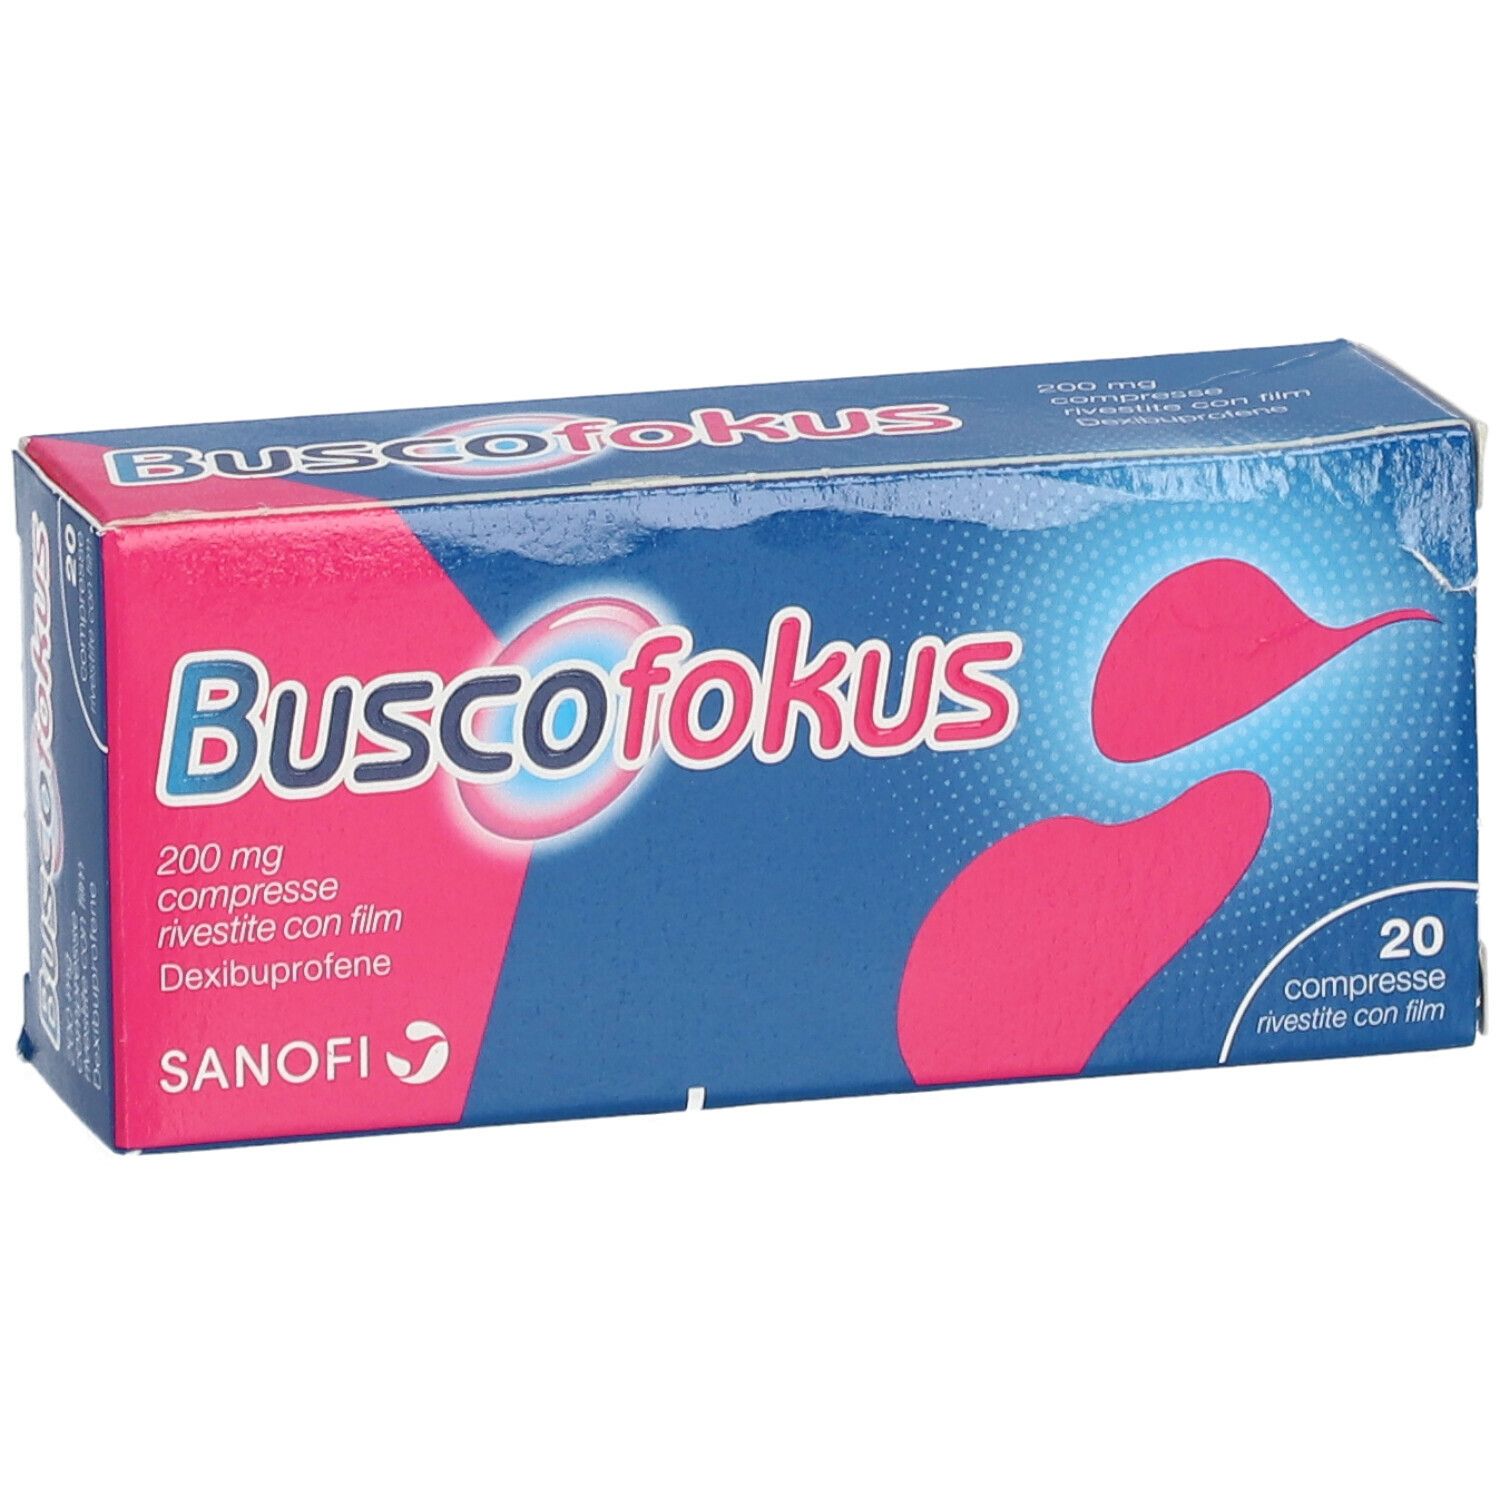 Buscofokus 200 mg